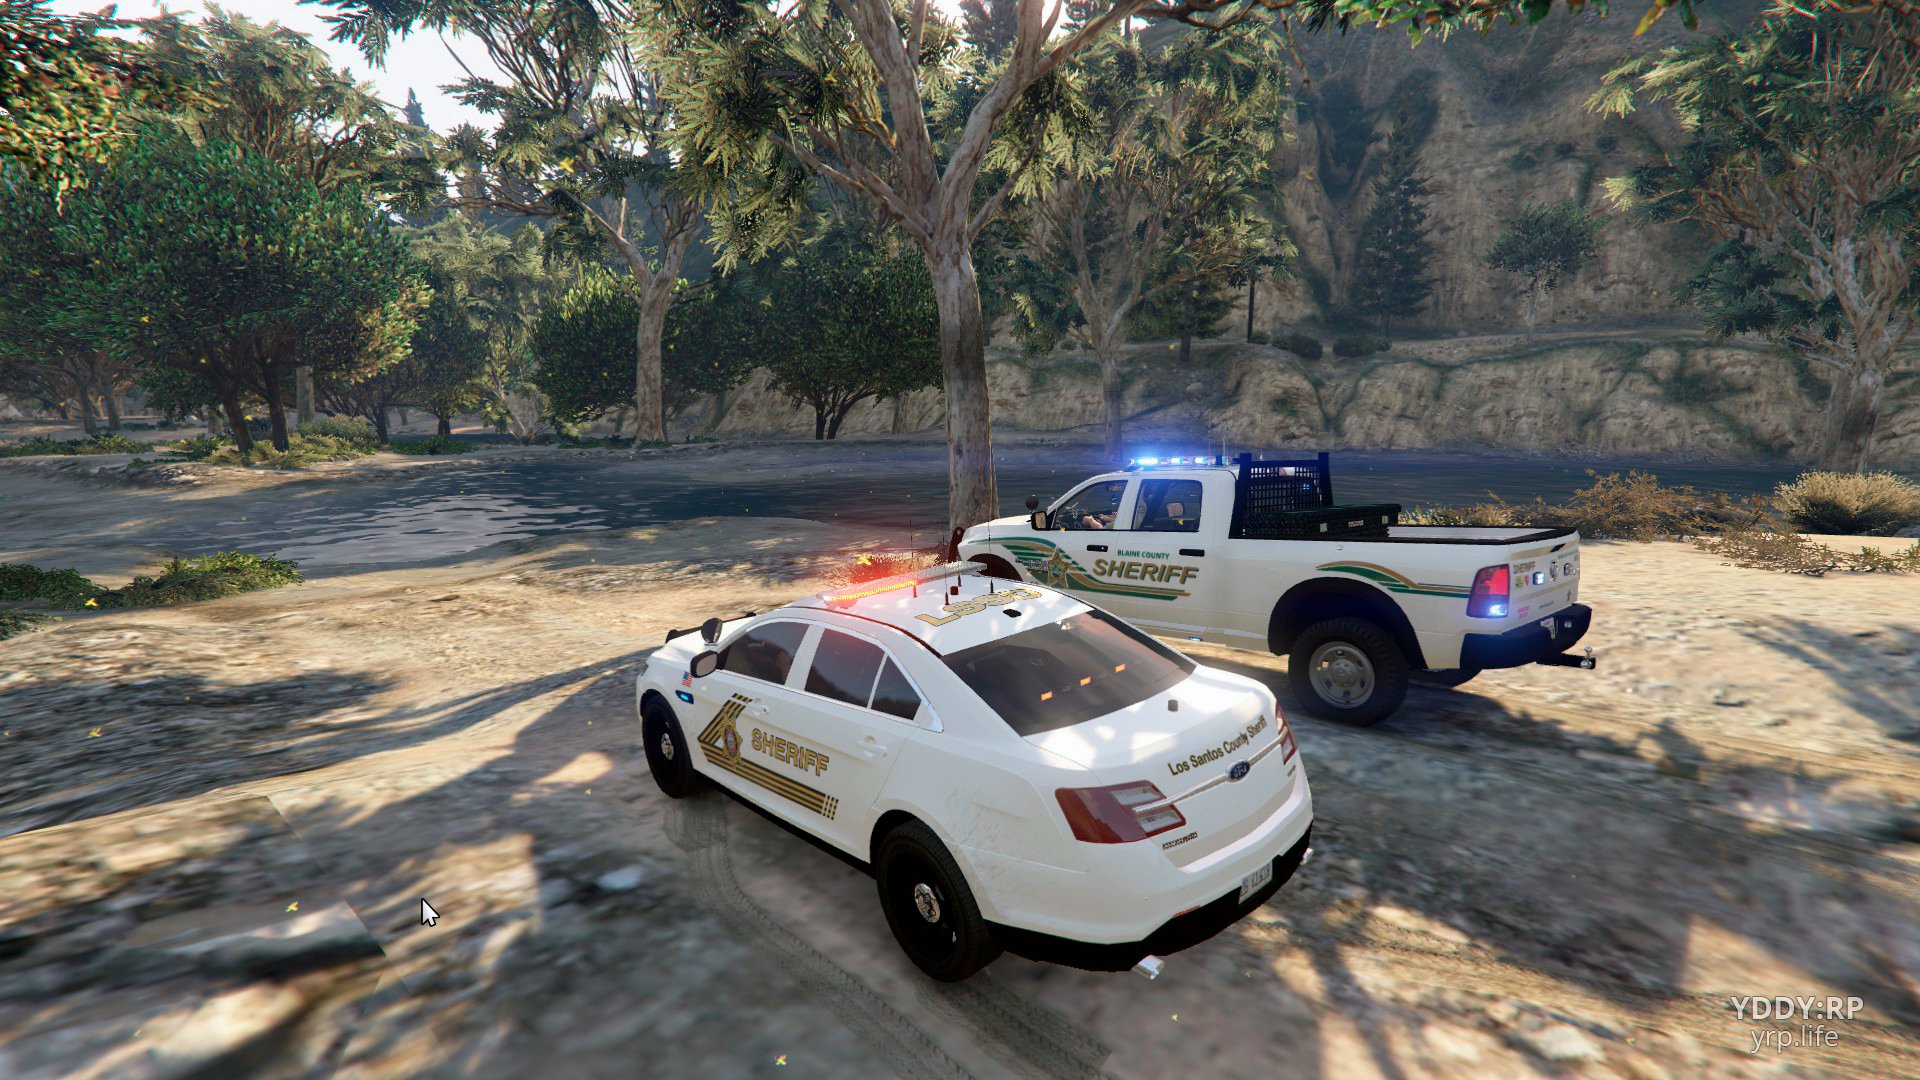 Совместное патрулирование пересеченной местности офицерами Управления Шерифа Блэйн Каунти и Департамента Шерифа Лос-Сантоса